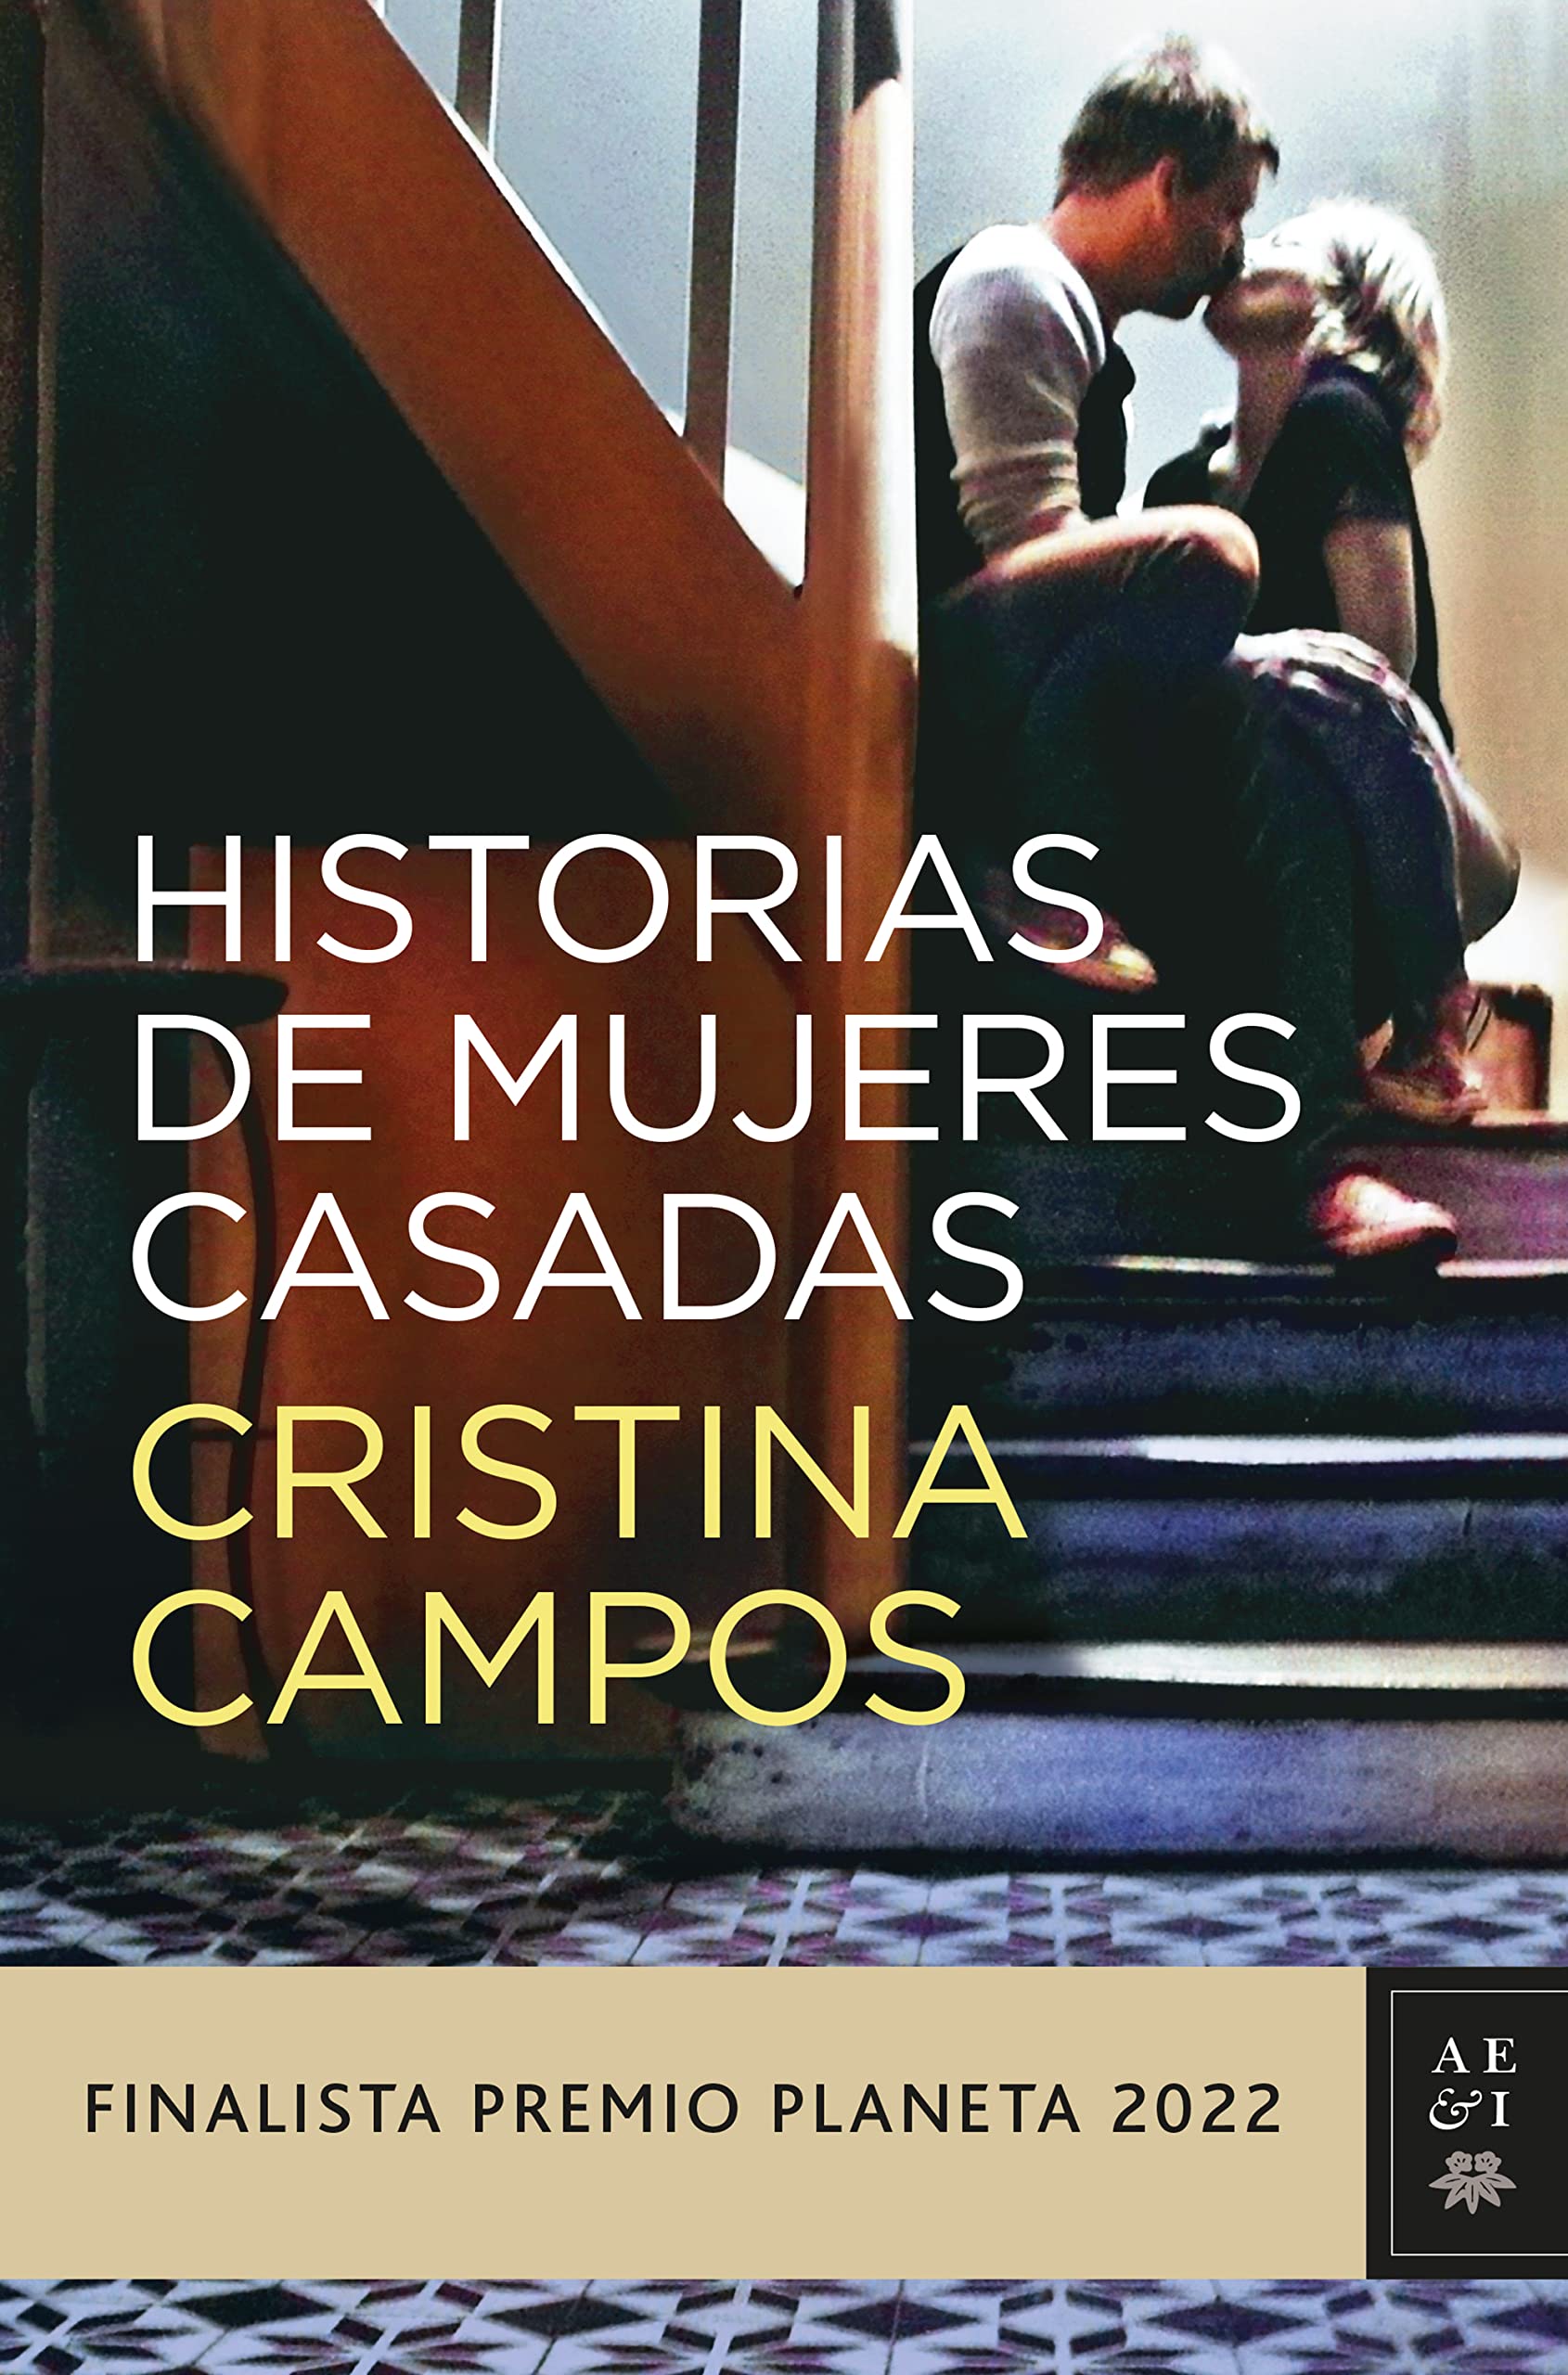 Cristina Campos